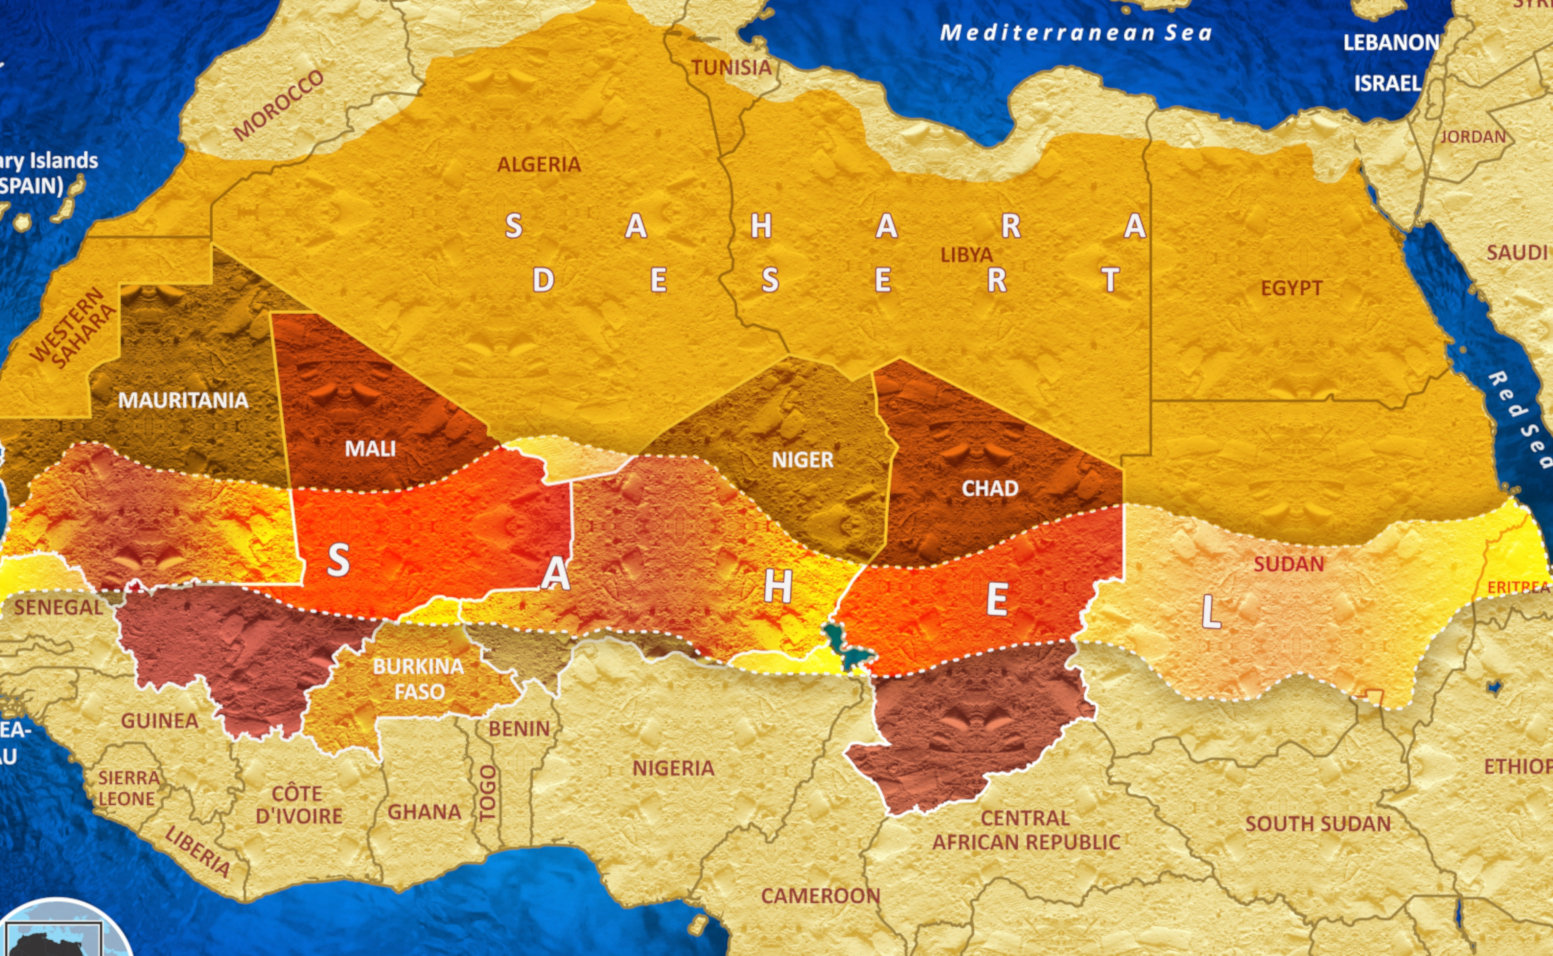 Η ζώνη του Sahel: Τι συμβαίνει στην ερημική περιοχή των 150 εκατ. κατοίκων που αναφέρεται στη συμφωνία Ελλάδας-Γαλλίας